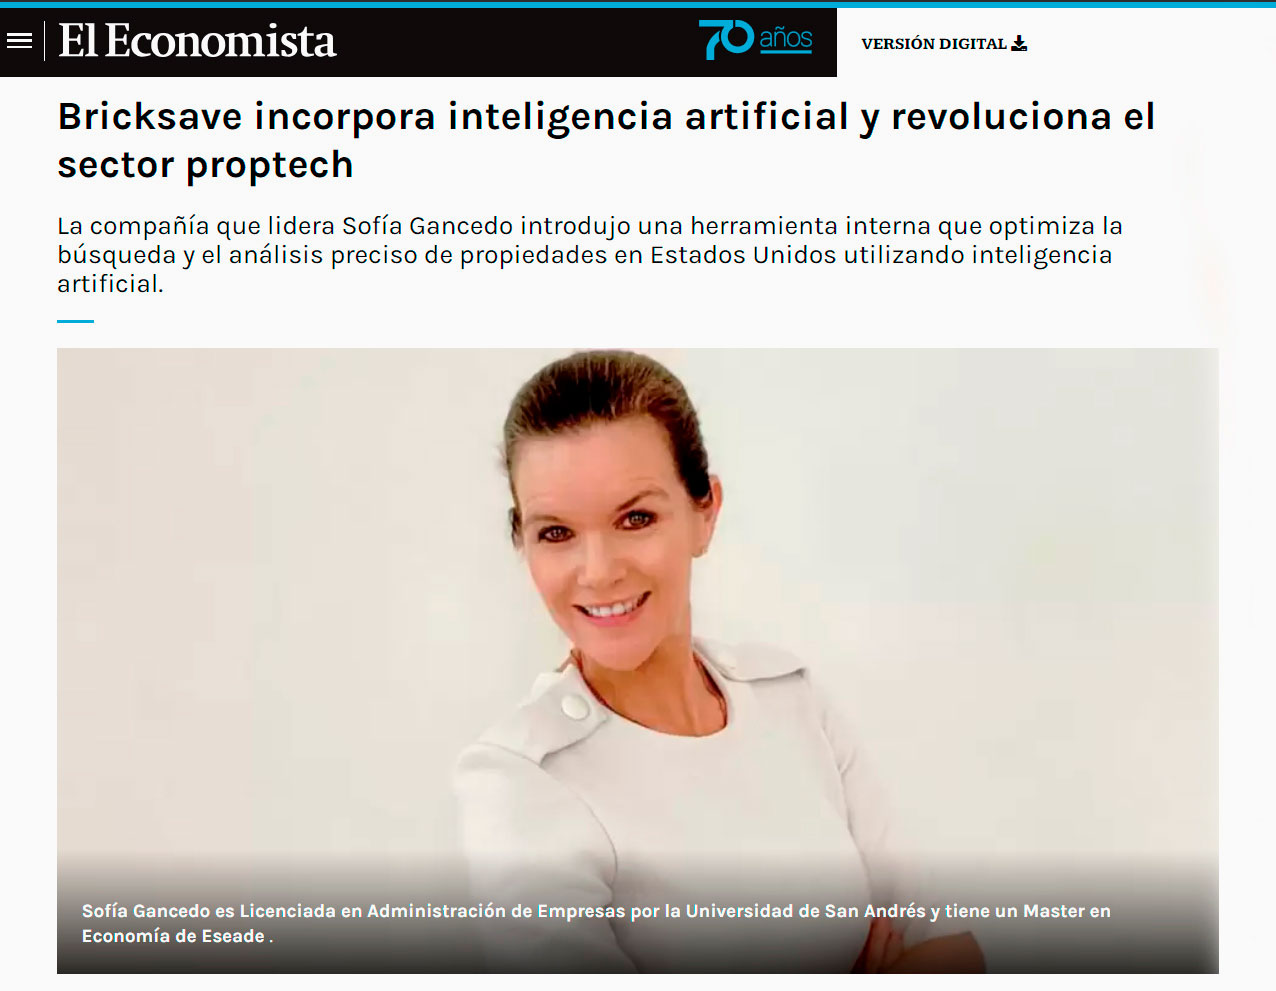 Bricksave na imprensa: El Economista: Bricksave incorpora inteligência artificial e revoluciona o setor de proptech